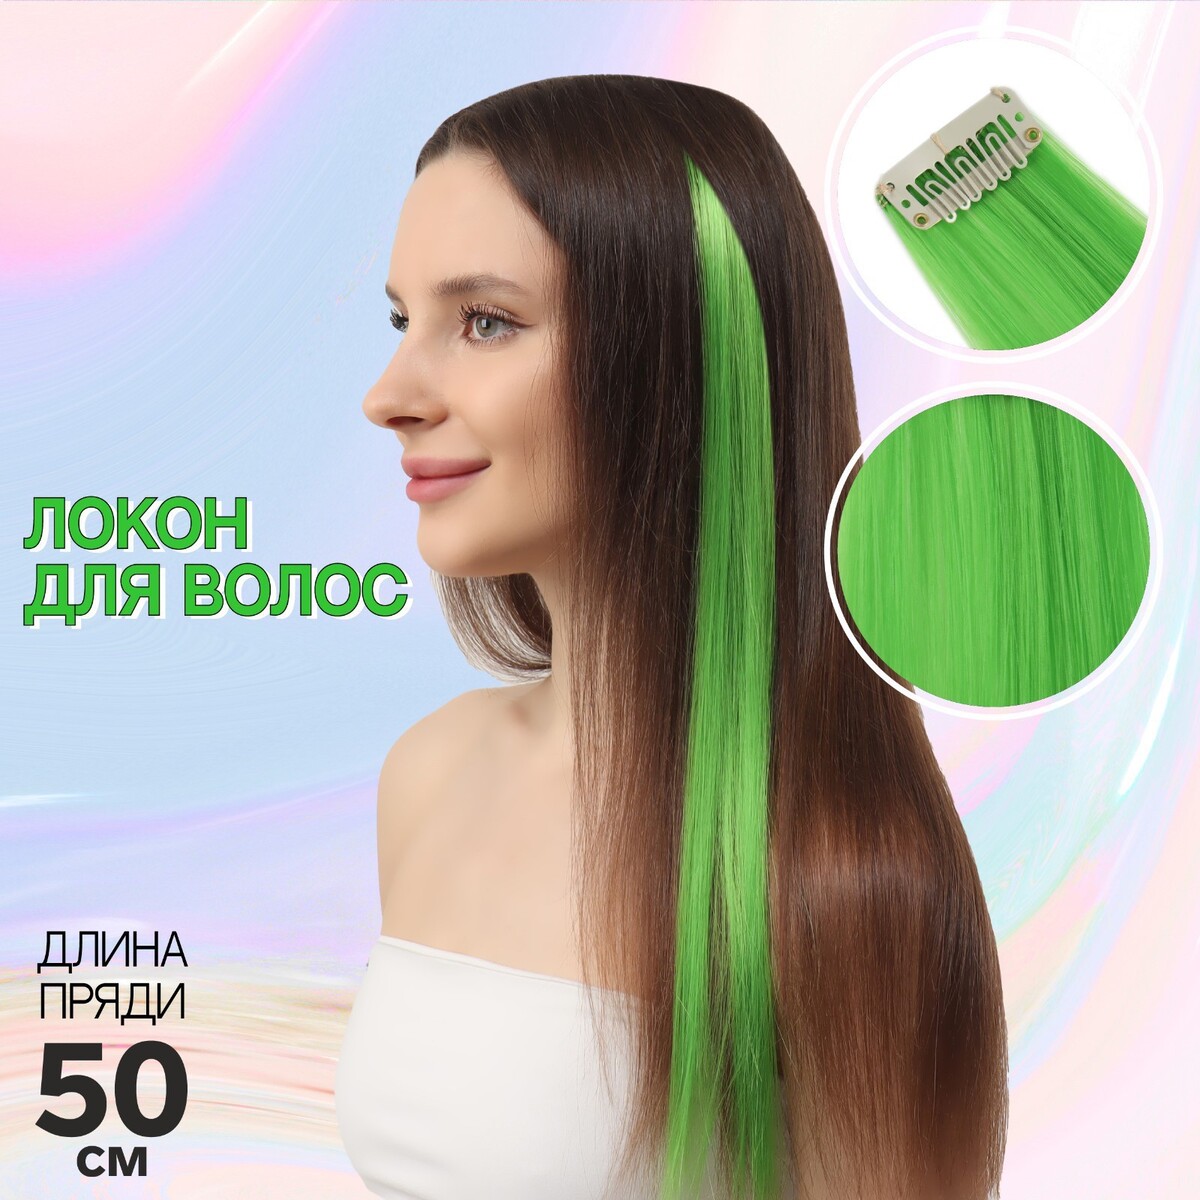 Локон накладной, прямой волос, на заколке, 50 см, 5 гр, цвет зеленый локон накладной прямой волос на заколке 50 см 5 гр жёлтый